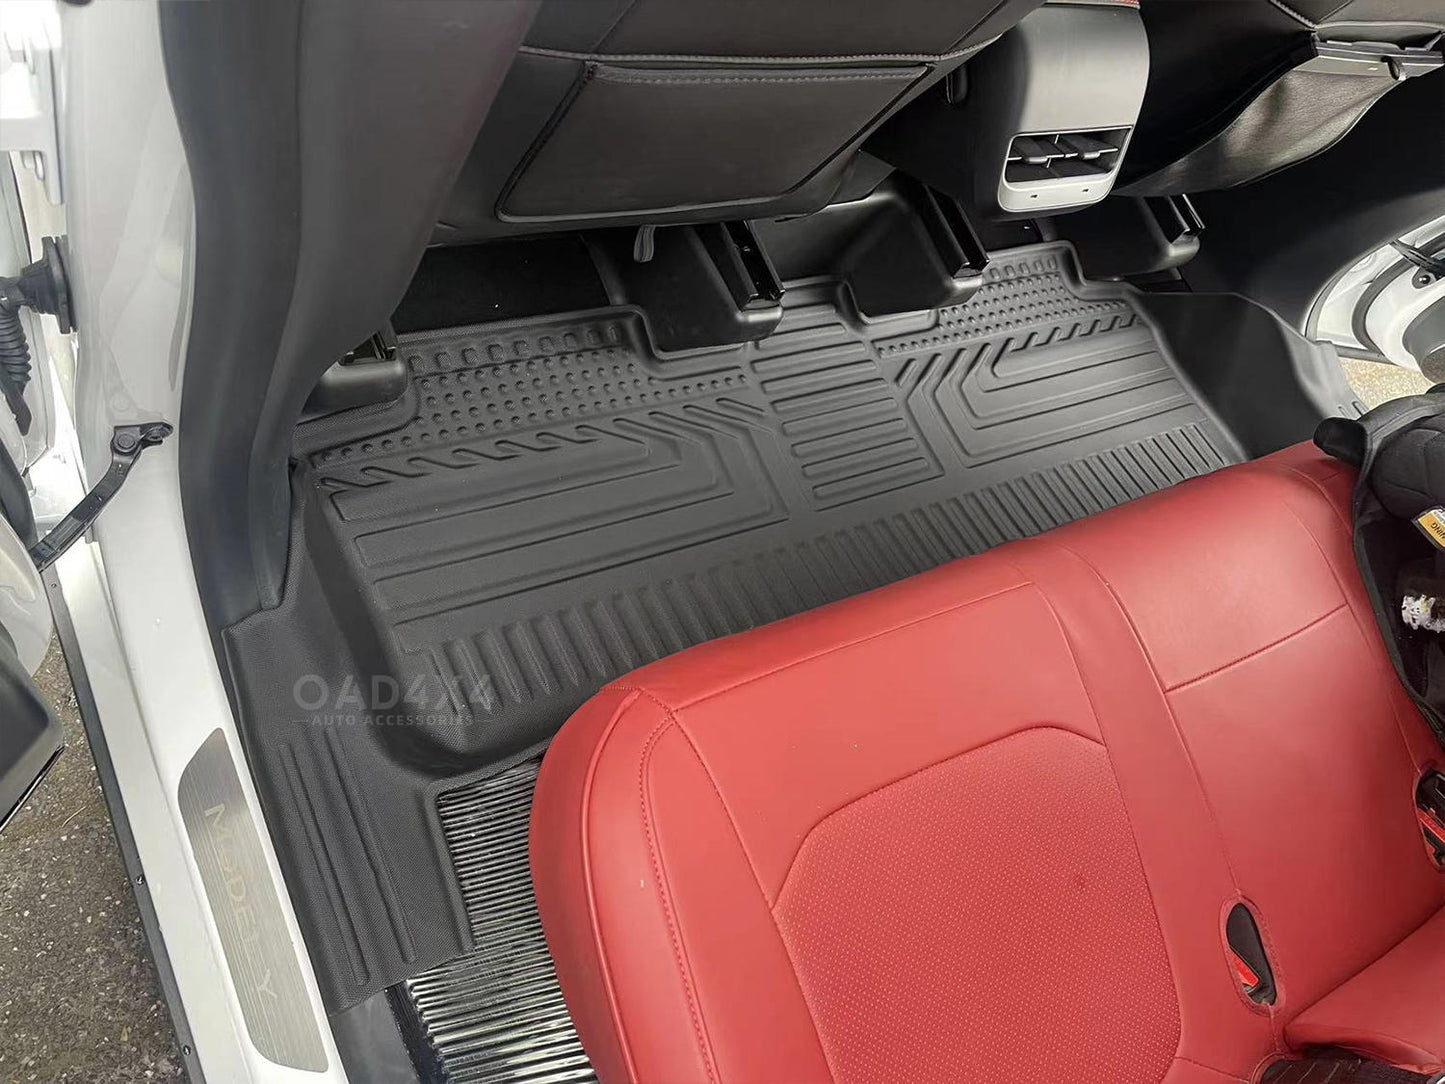 5D TPE Floor Mats for Tesla Model Y 2022-Onwards Tailored Door Sill Covered Car Mats Floor Mat Liner